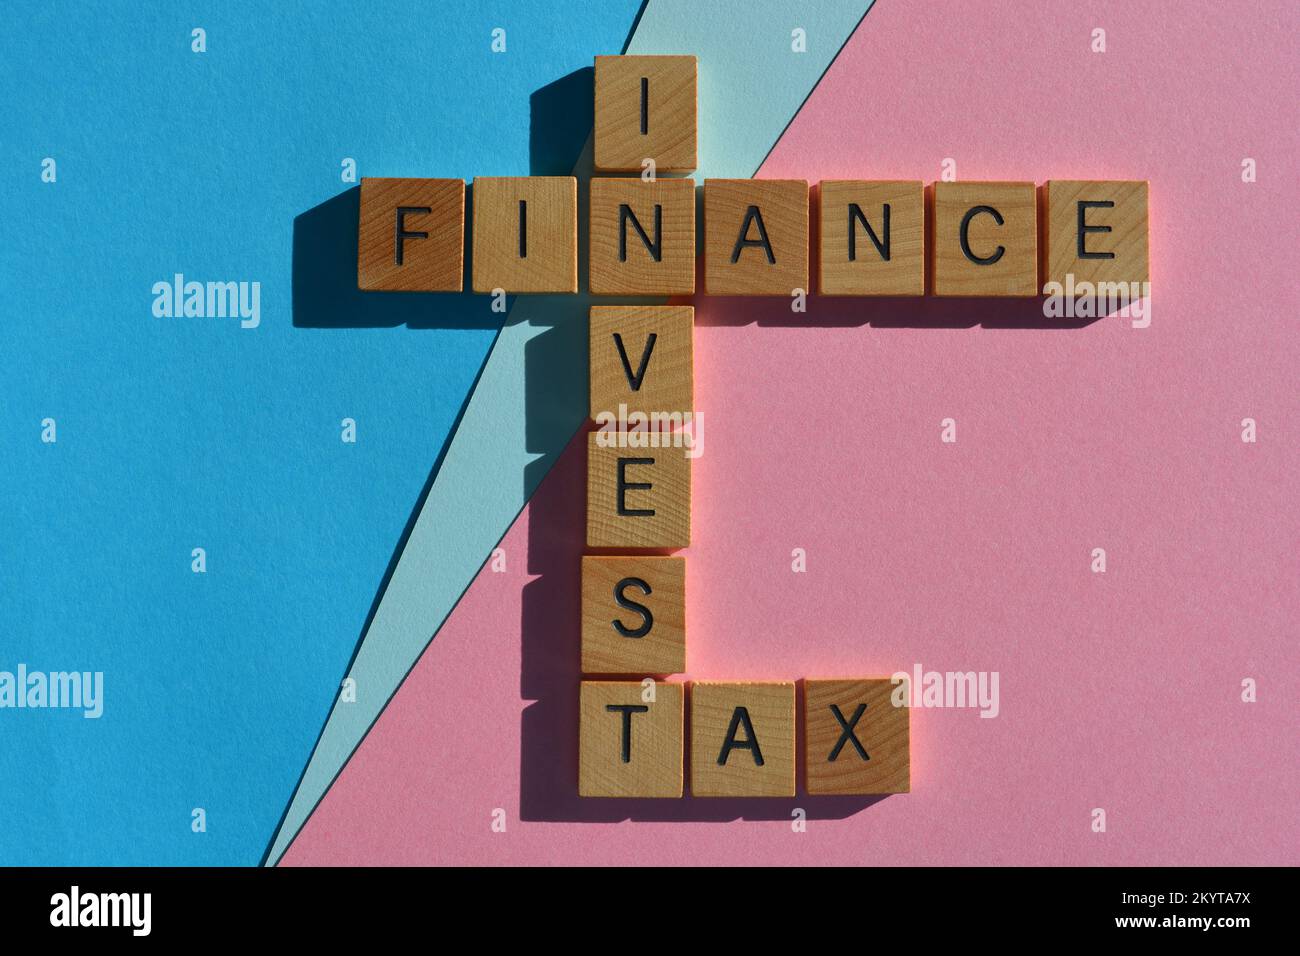 Finance, Invest, Tax, mots en lettres d'alphabet en bois, sous forme de mots croisés, isolés sur fond rose et bleu Banque D'Images